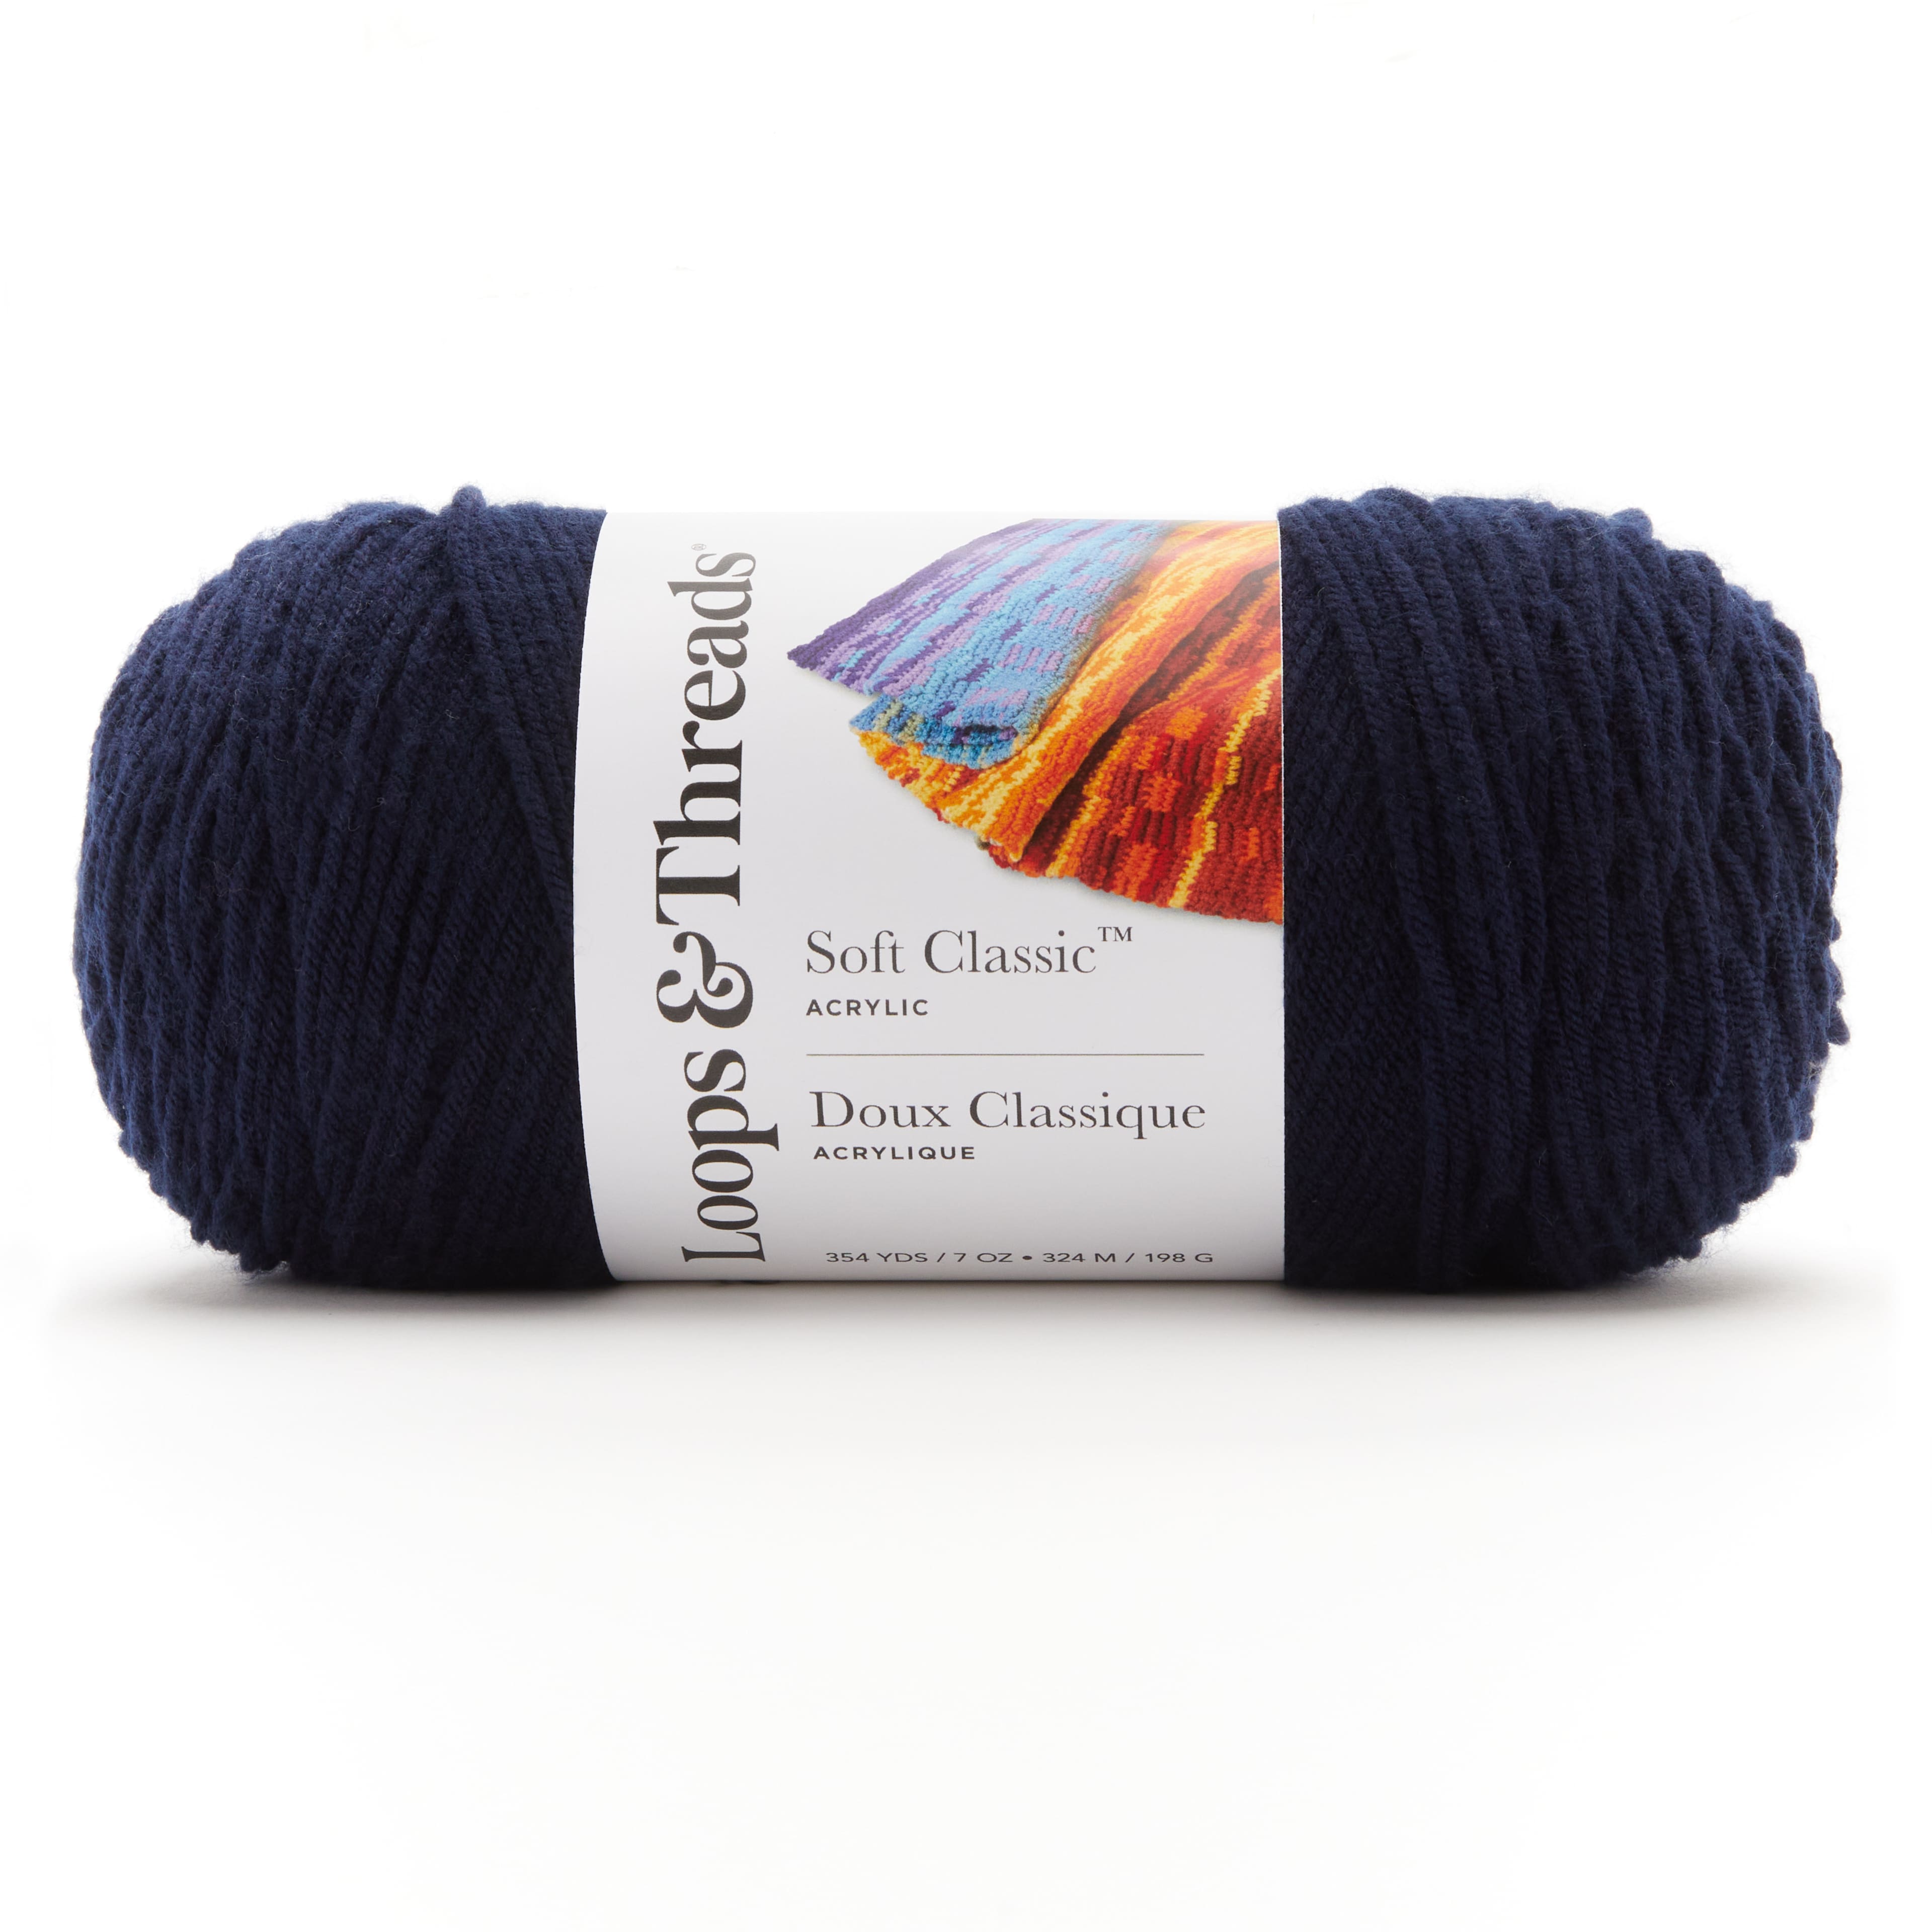 DISCONTINUED Mustard Nature's Choice Yarn by Lion Brand Yarn, Organic  Cotton Yarn, 4 Weight Yarn, Knitting Yarn, Crocheting Yarn, Worsted 4 